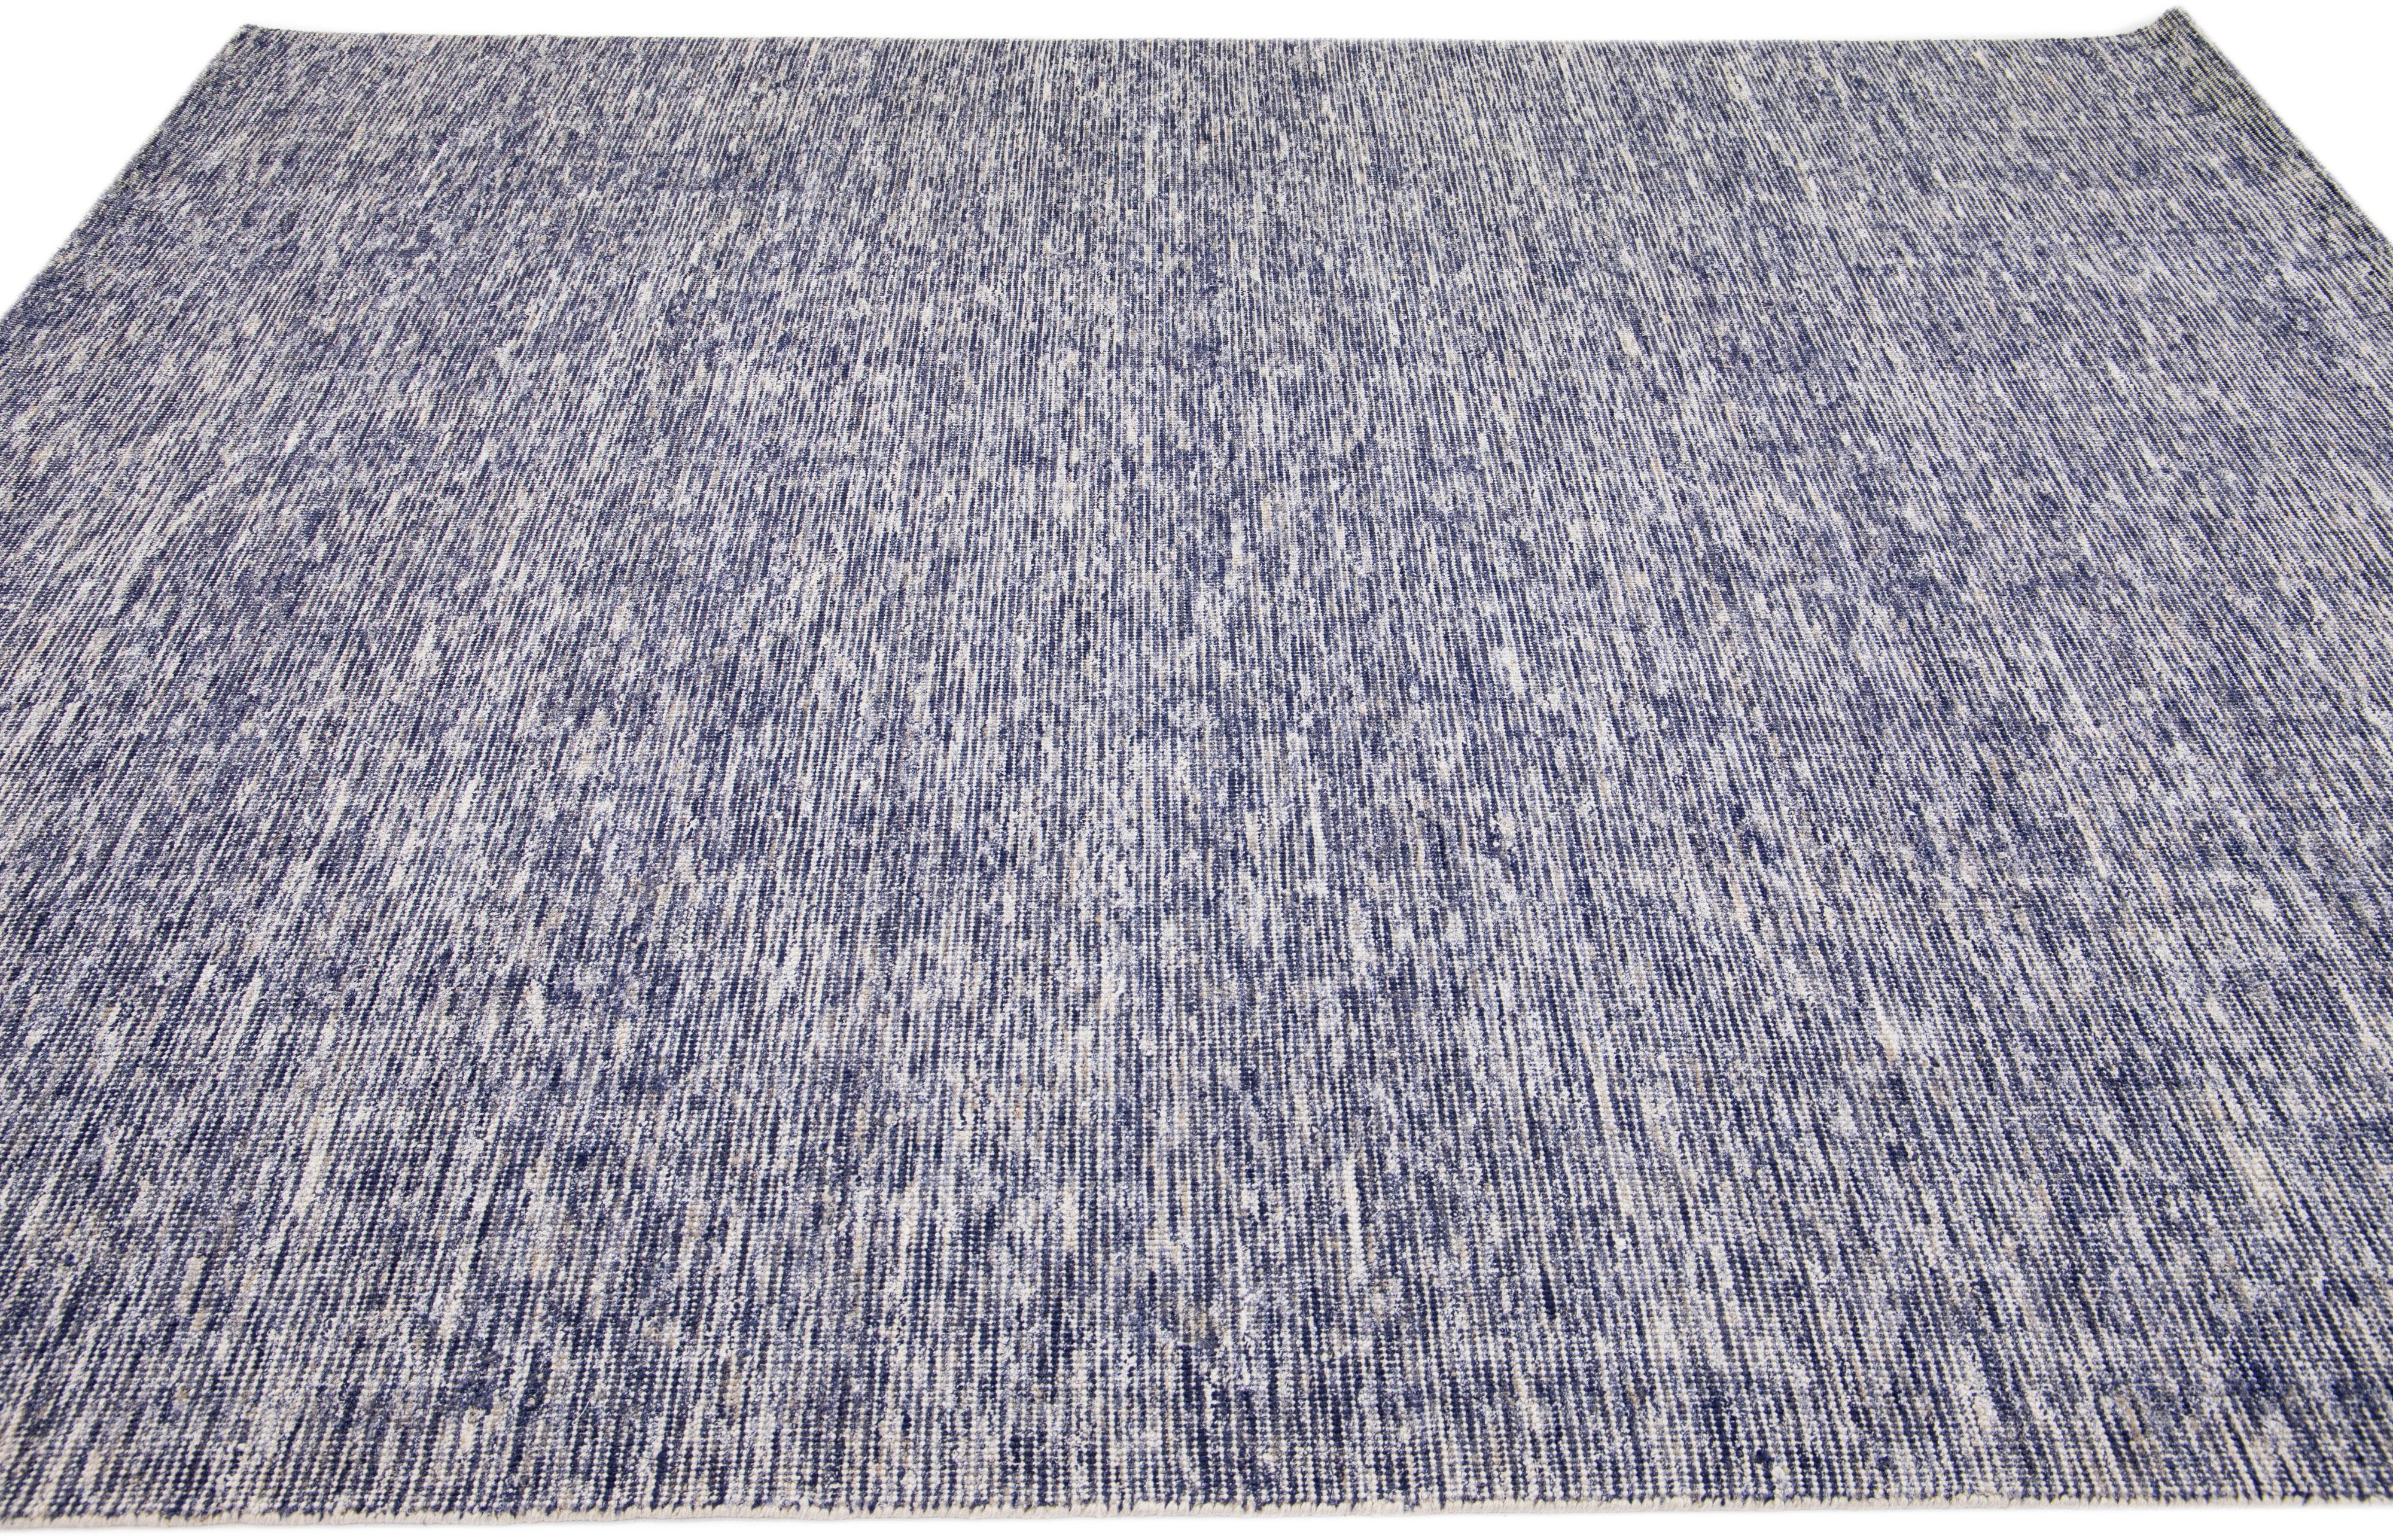 Wunderschöner handgefertigter indischer Rillenteppich aus Bambus und Seide von Apadanas mit einem marineblauen Feld. Dieser Teppich aus der Groove Collection hat ein unifarbenes Allover-Muster.

Dieser Teppich misst 8' x 10'.

Kundenspezifische